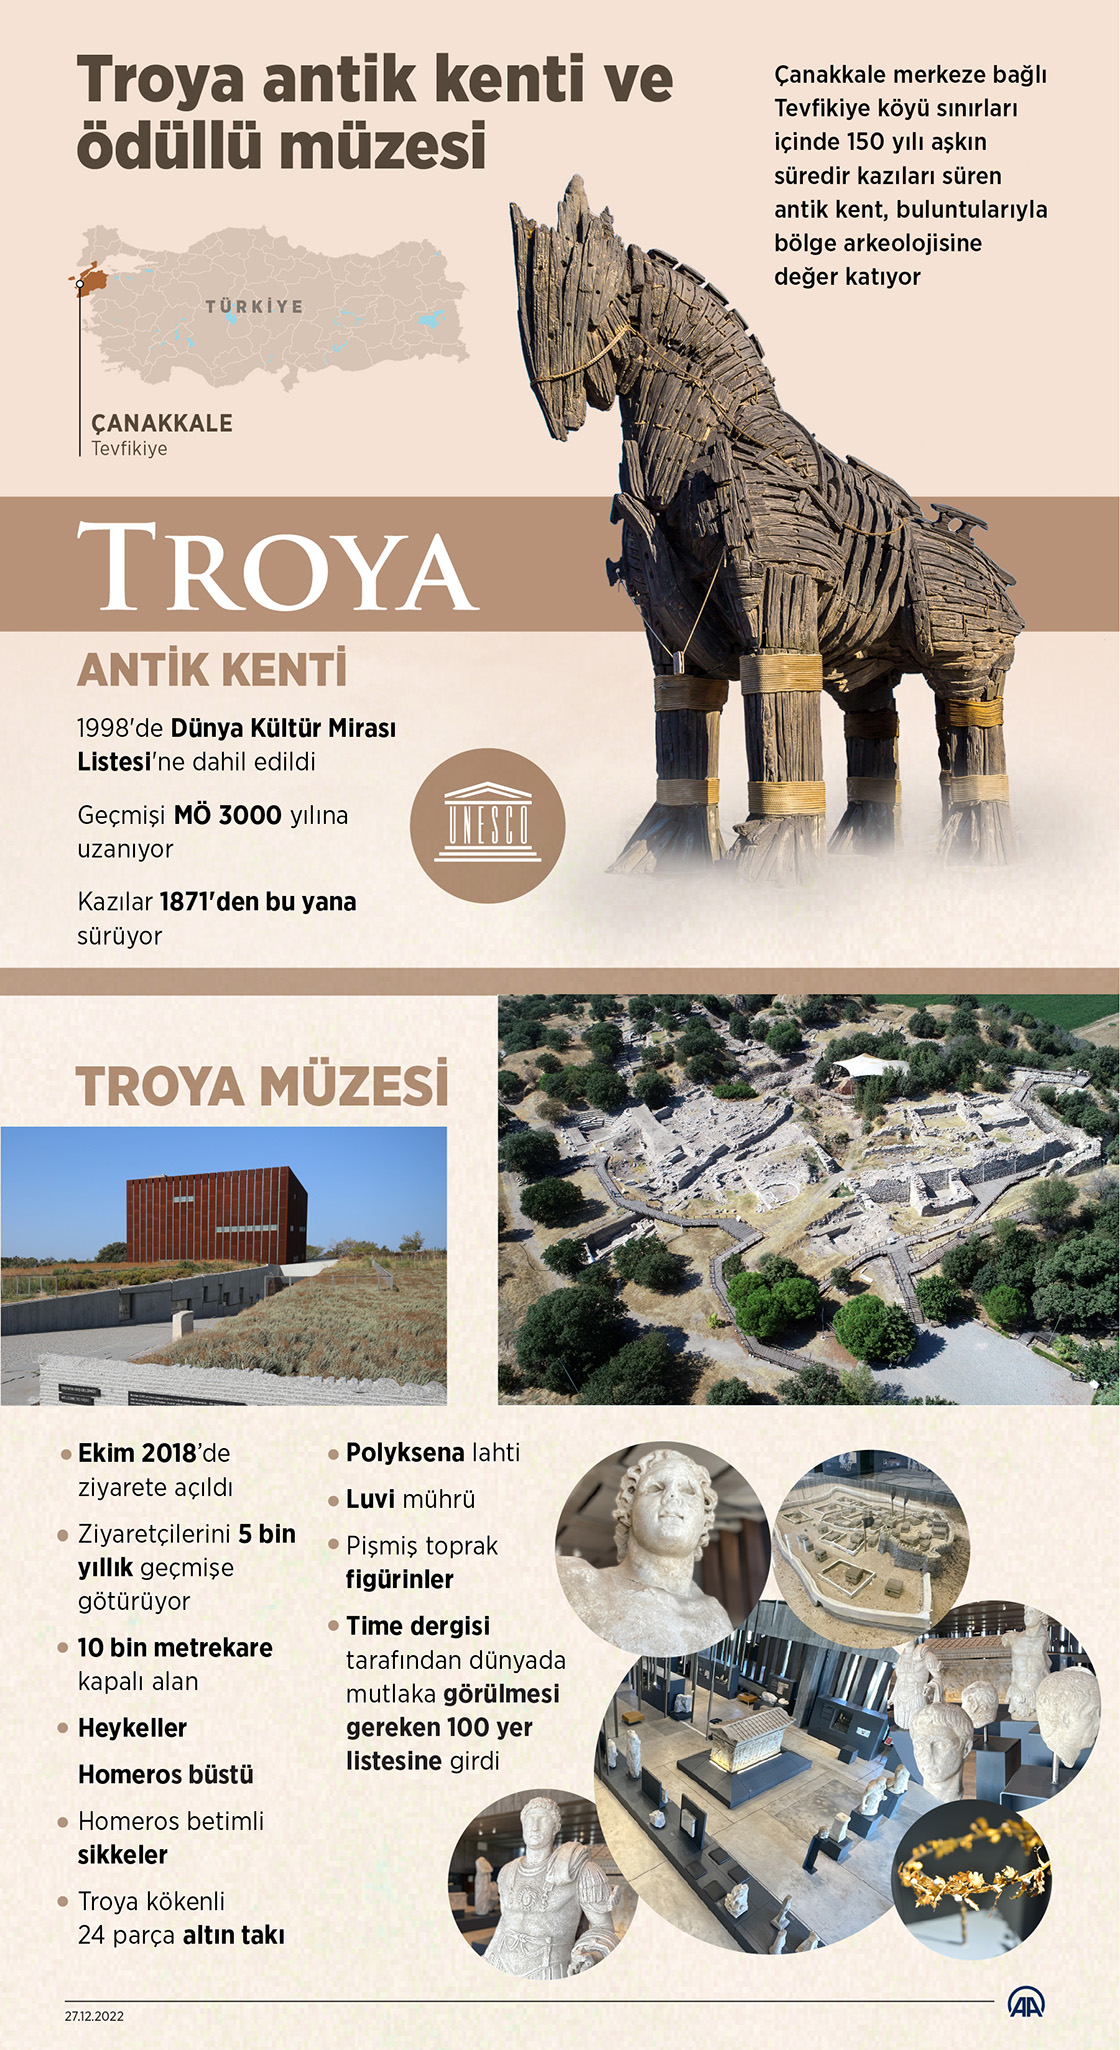  Troya antik kenti ve ödüllü müzesi